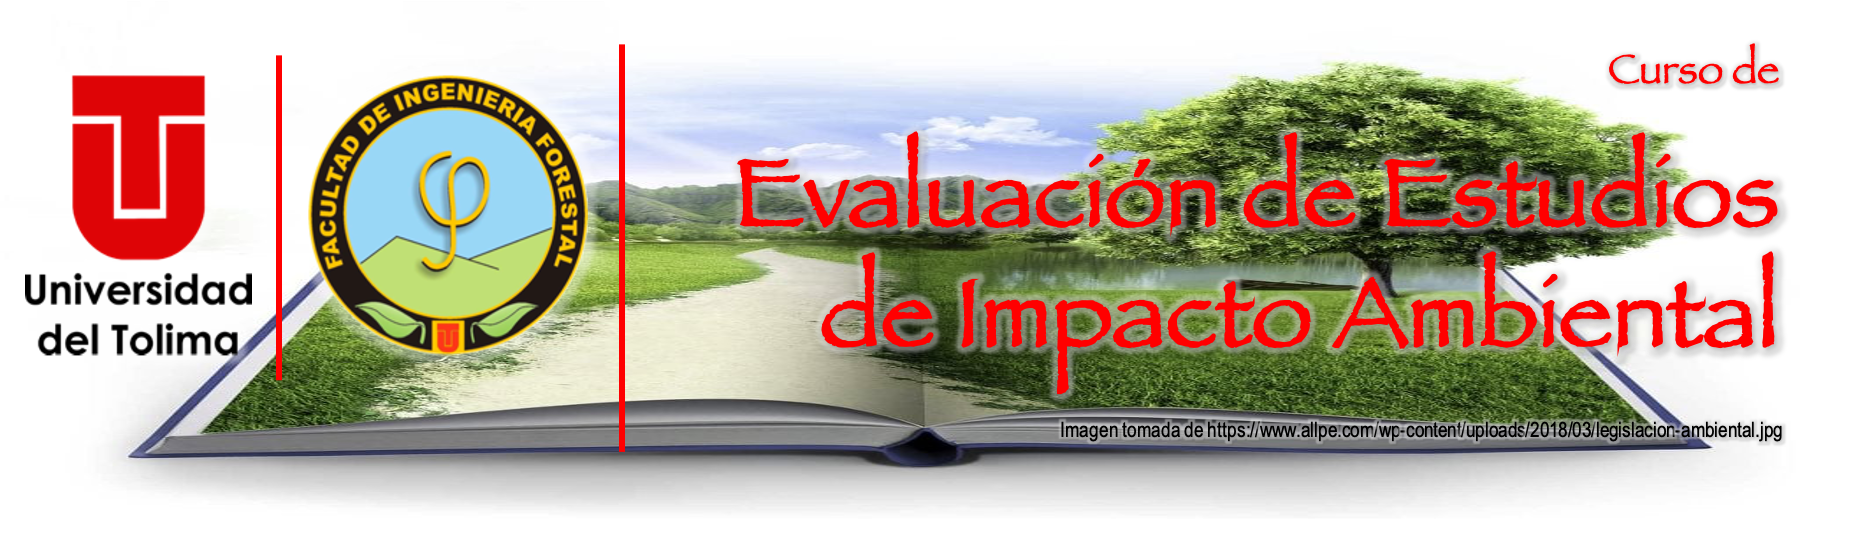 Evaluación de Estudios de Impacto Ambiental